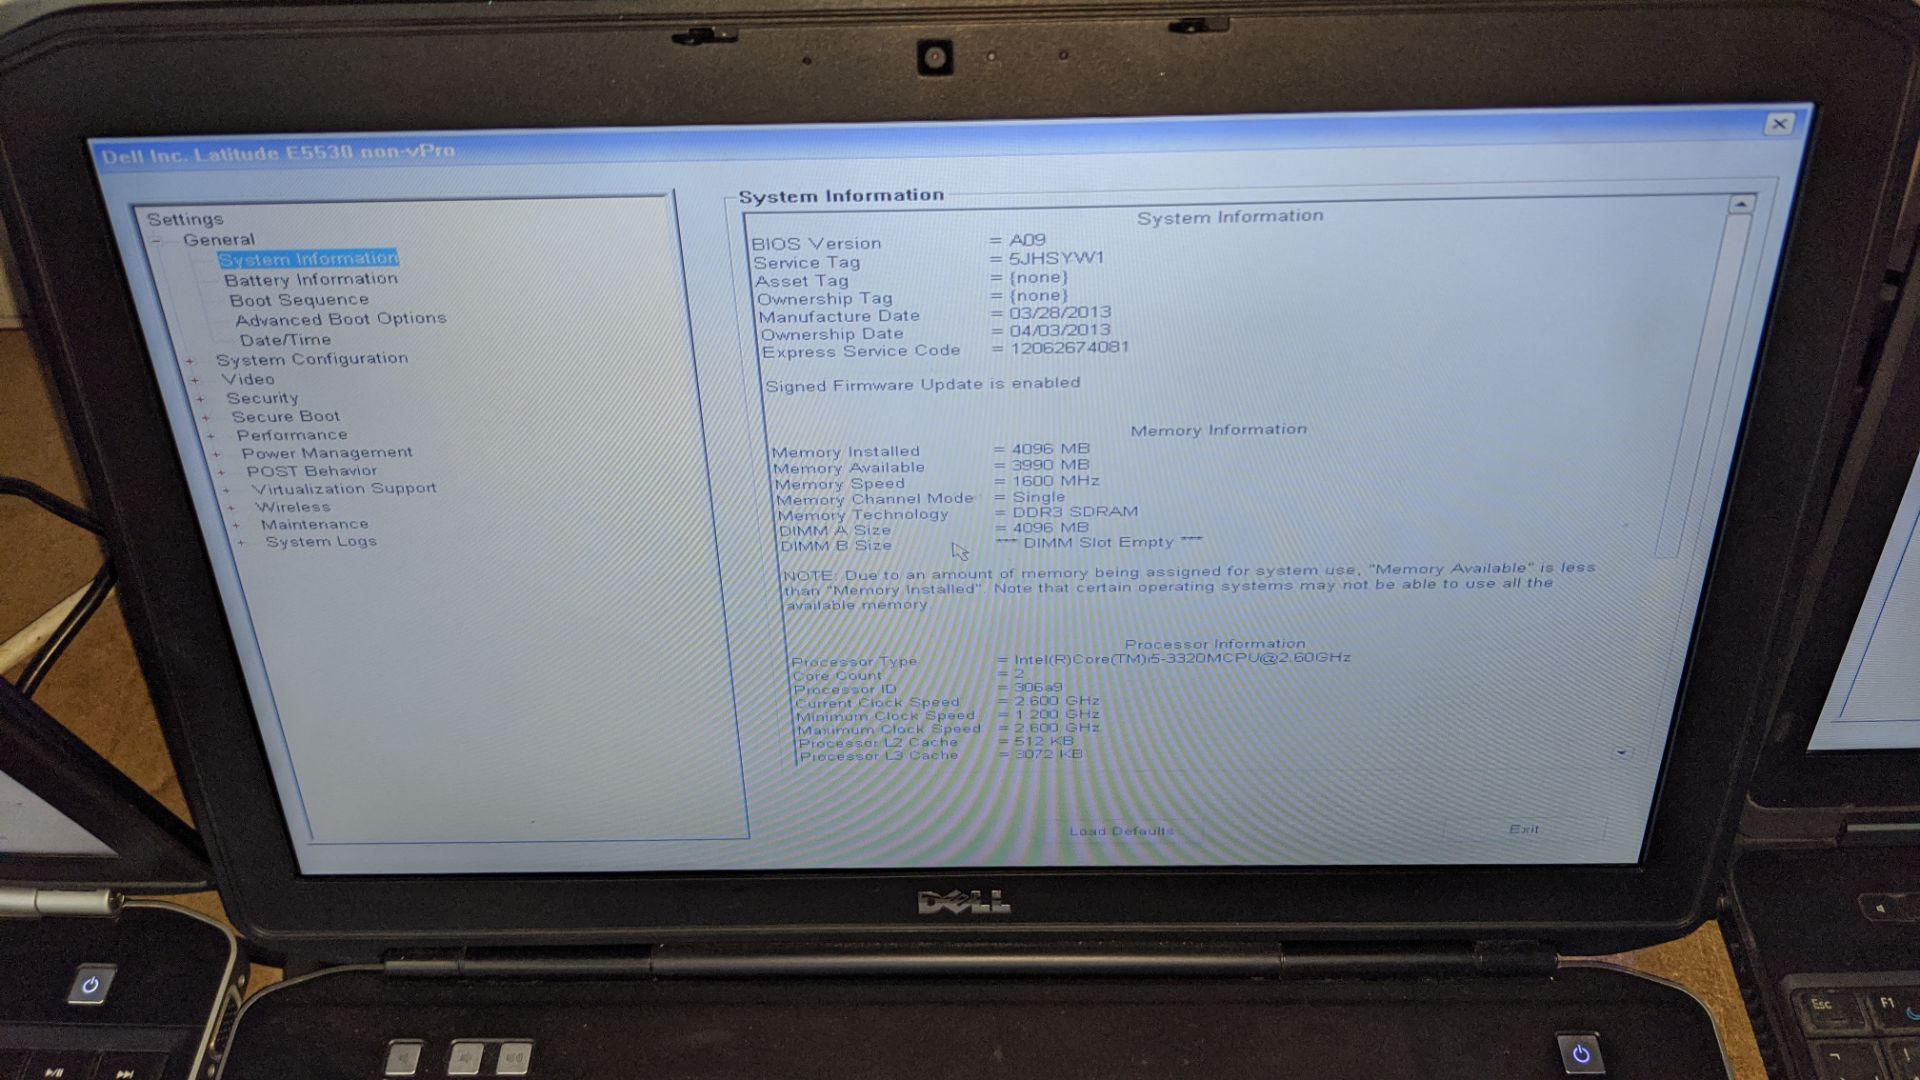 Dell Latitude E5530 notebook computer with Intel Core i5-3320 processor, 4Gb RAM, 500Gb hard drive, - Image 5 of 7